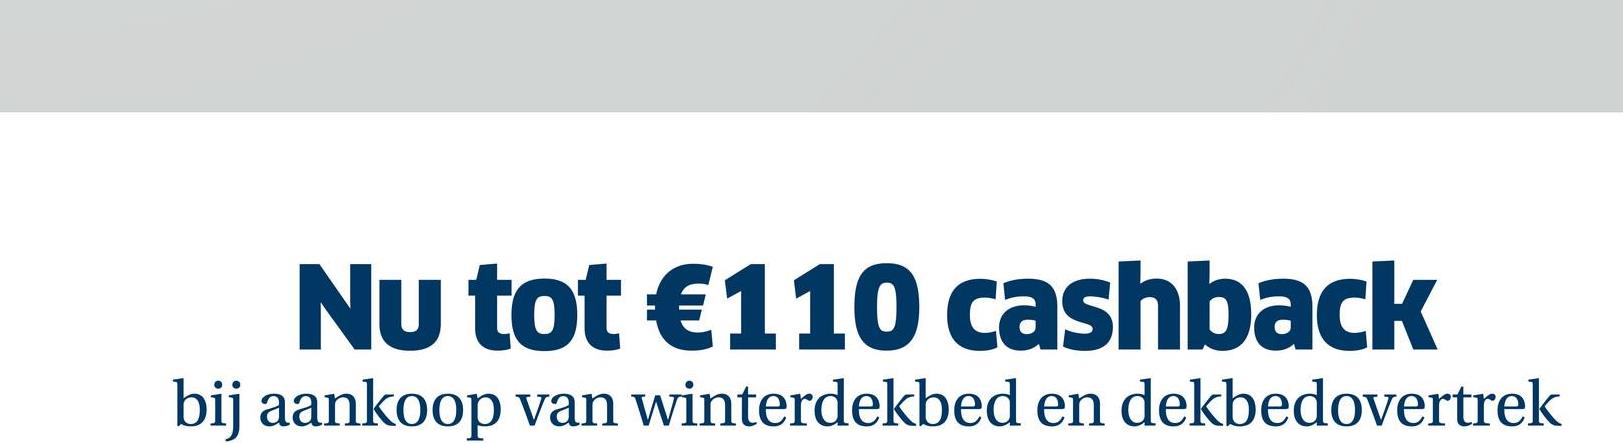 Nu tot €110 cashback
bij aankoop van winterdekbed en dekbedovertrek